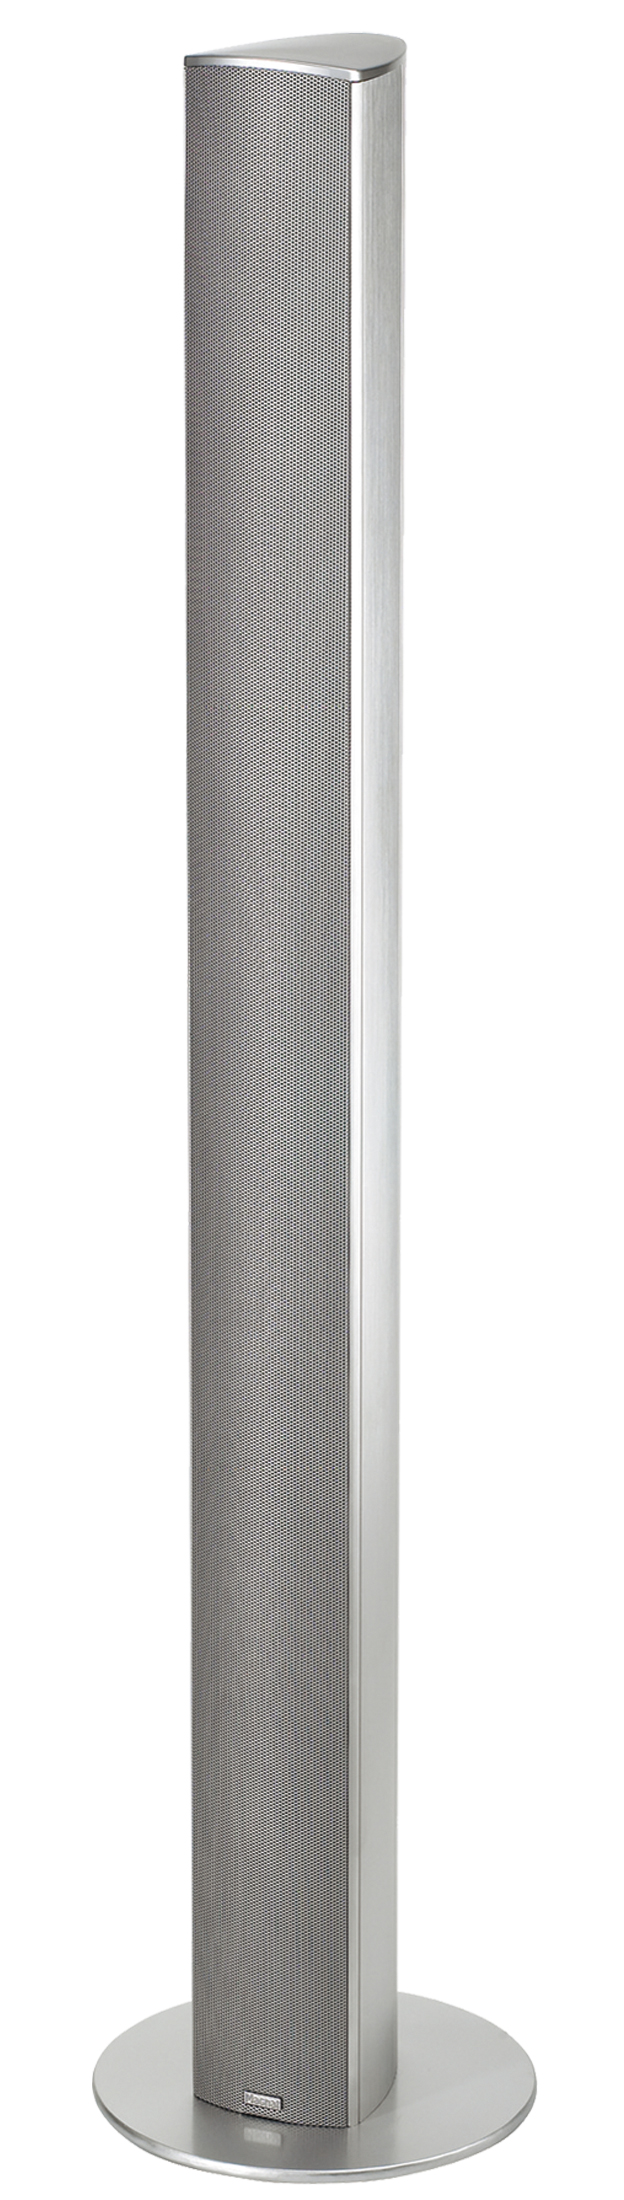 Image of Magnat Needle Super Alu Tower zilver aluminium